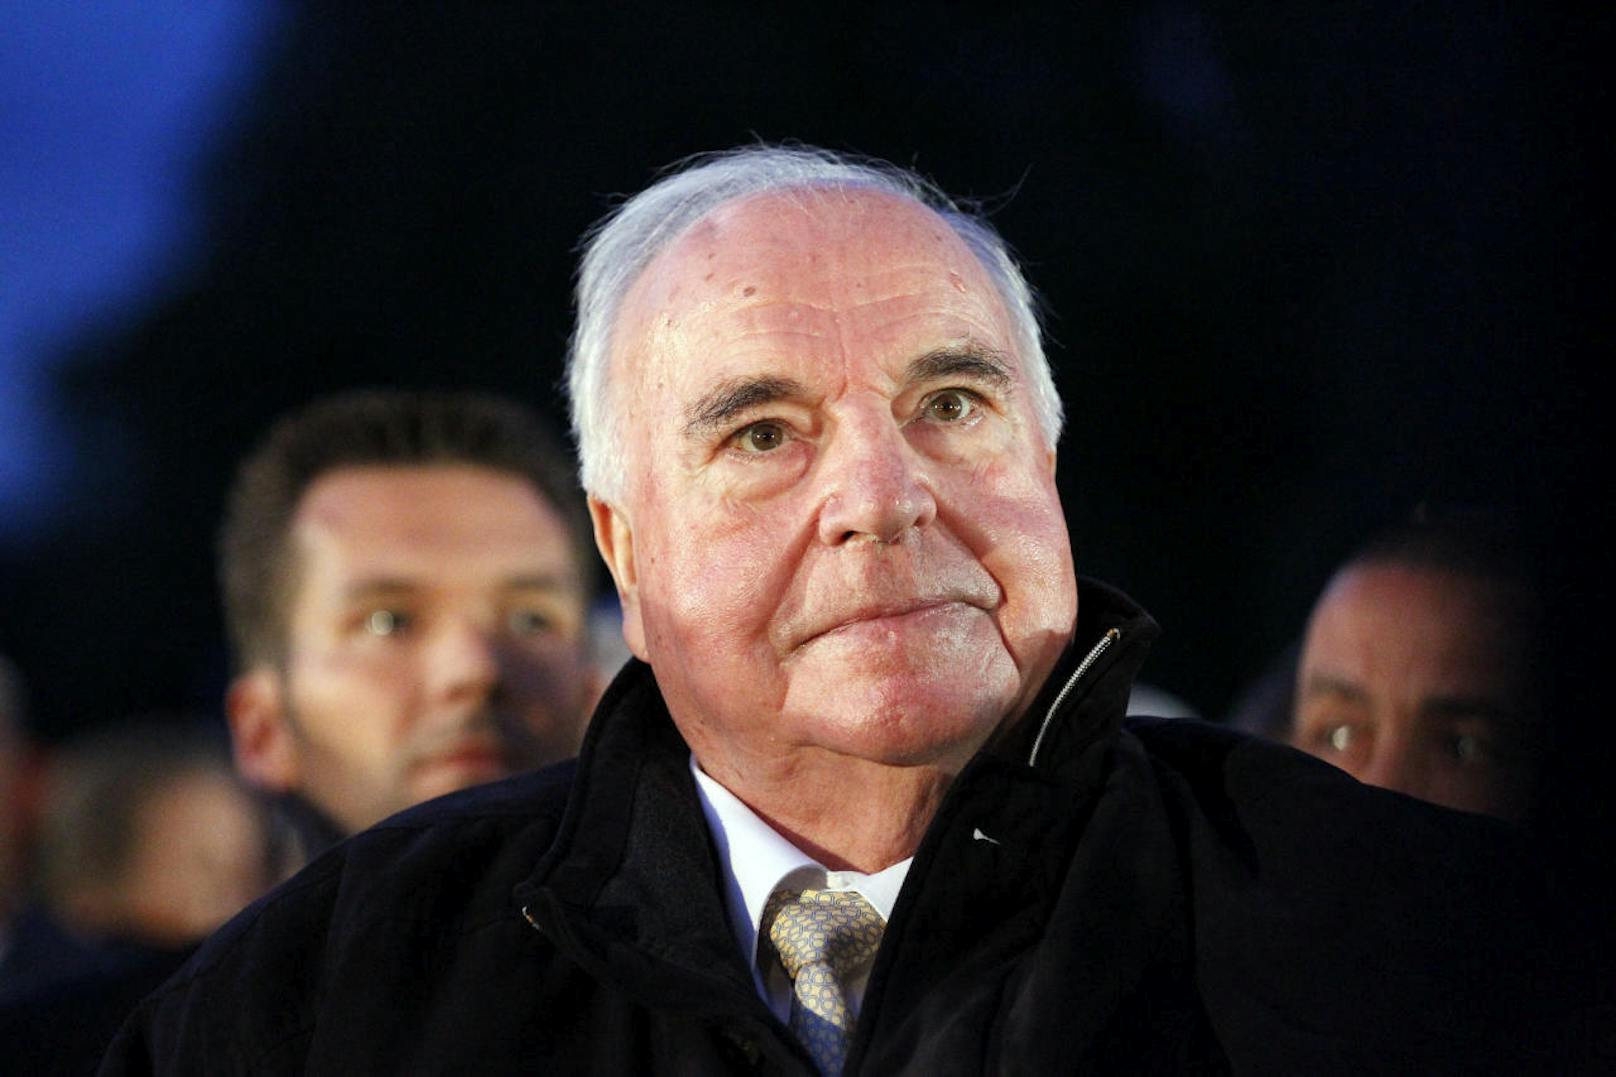 Helmut Kohl war von 1982 bis 1998 der sechste Bundeskanzler der Bundesrepublik Deutschland.